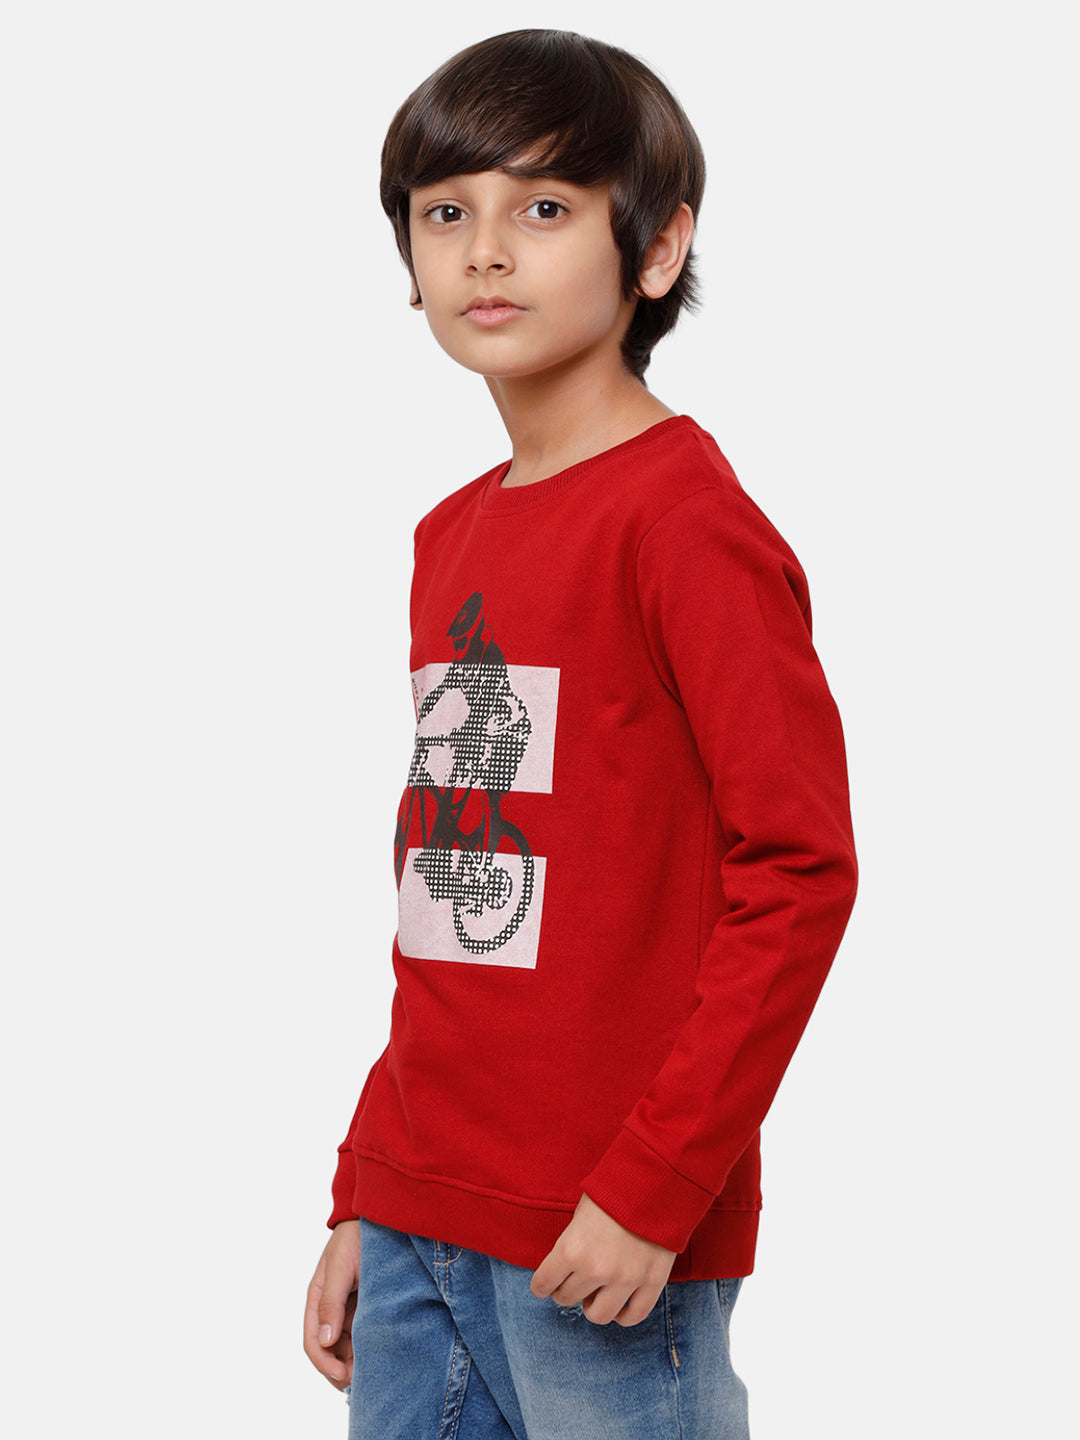 Kids - Boys Printed Sweatshirt Maroon